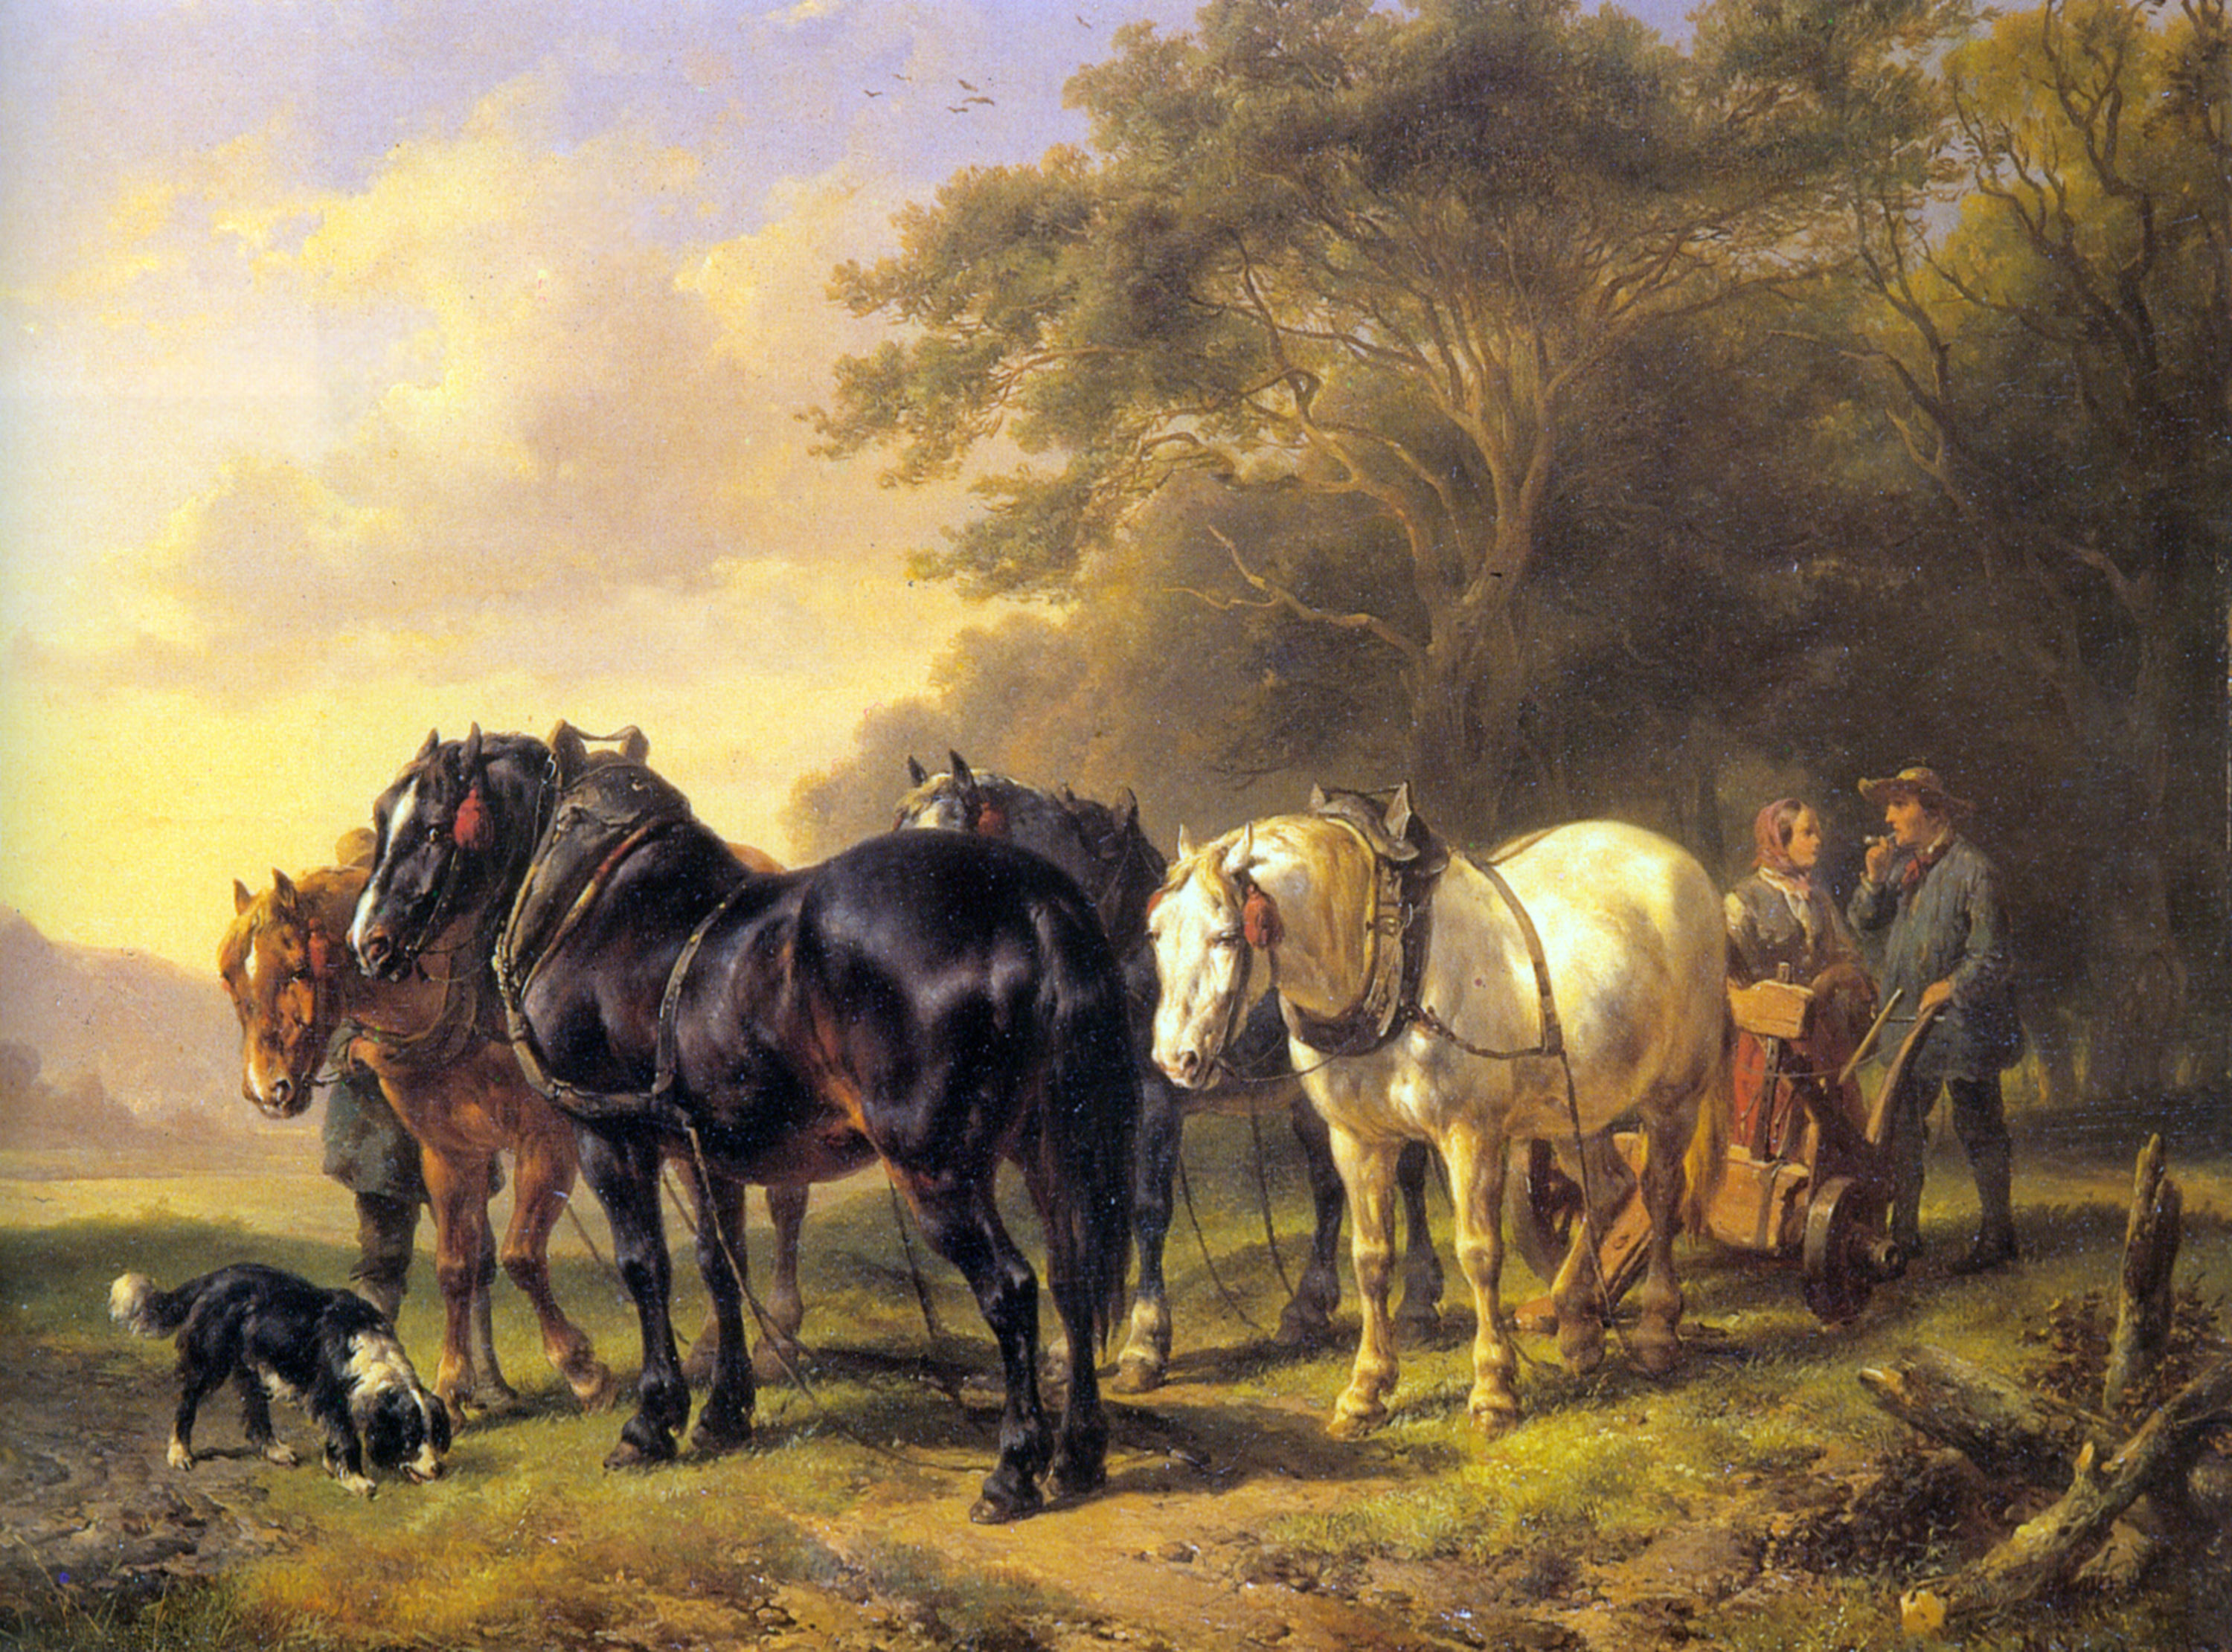 A Plough Team at Rest by Wouterus Verschuur Jr.